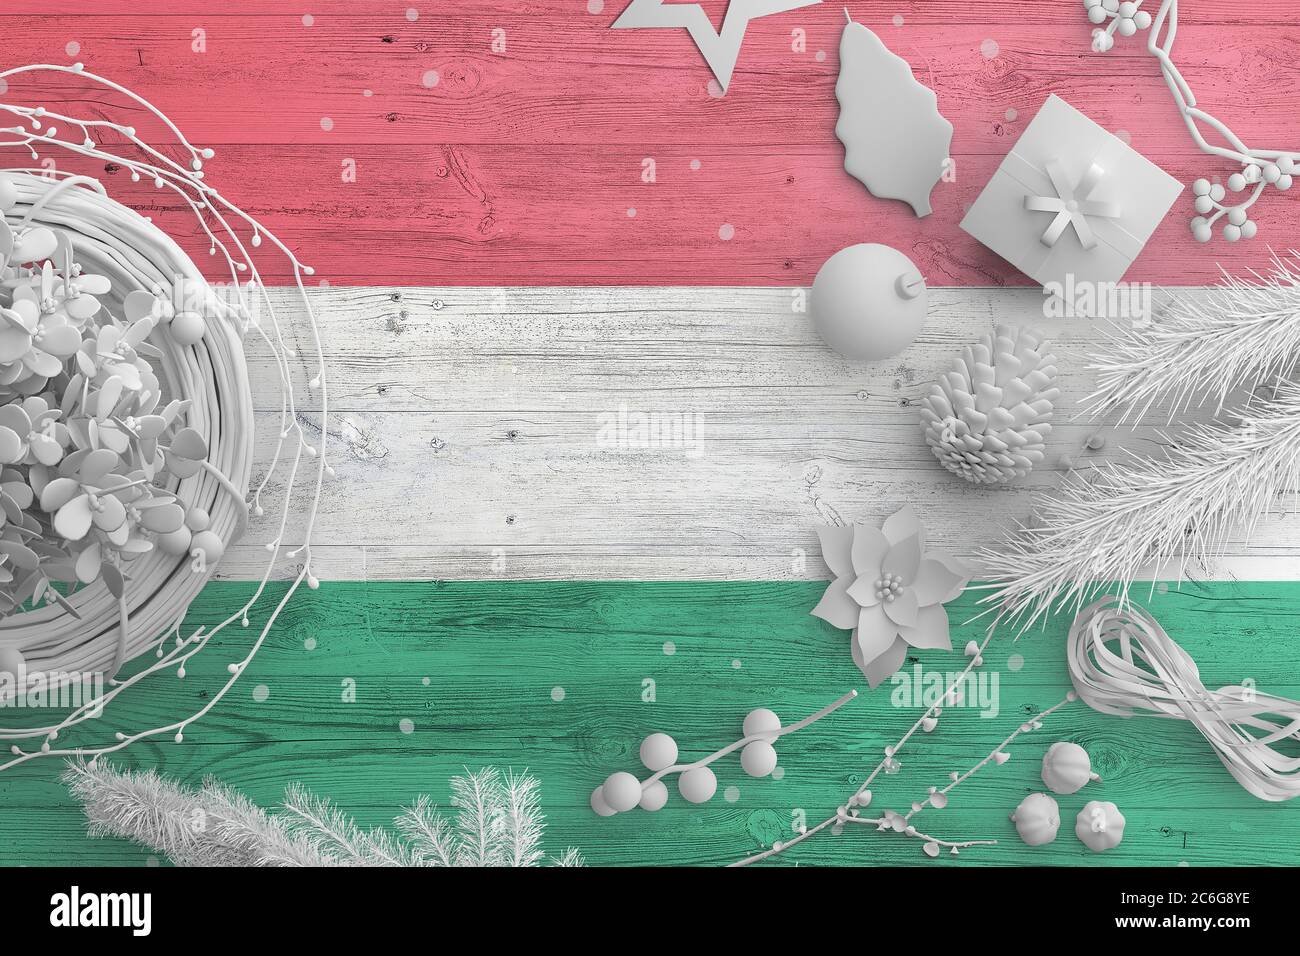 Drapeau hongrois sur table en bois avec objets neige. Noël et nouvel an, célébration national concept avec décor blanc. Banque D'Images